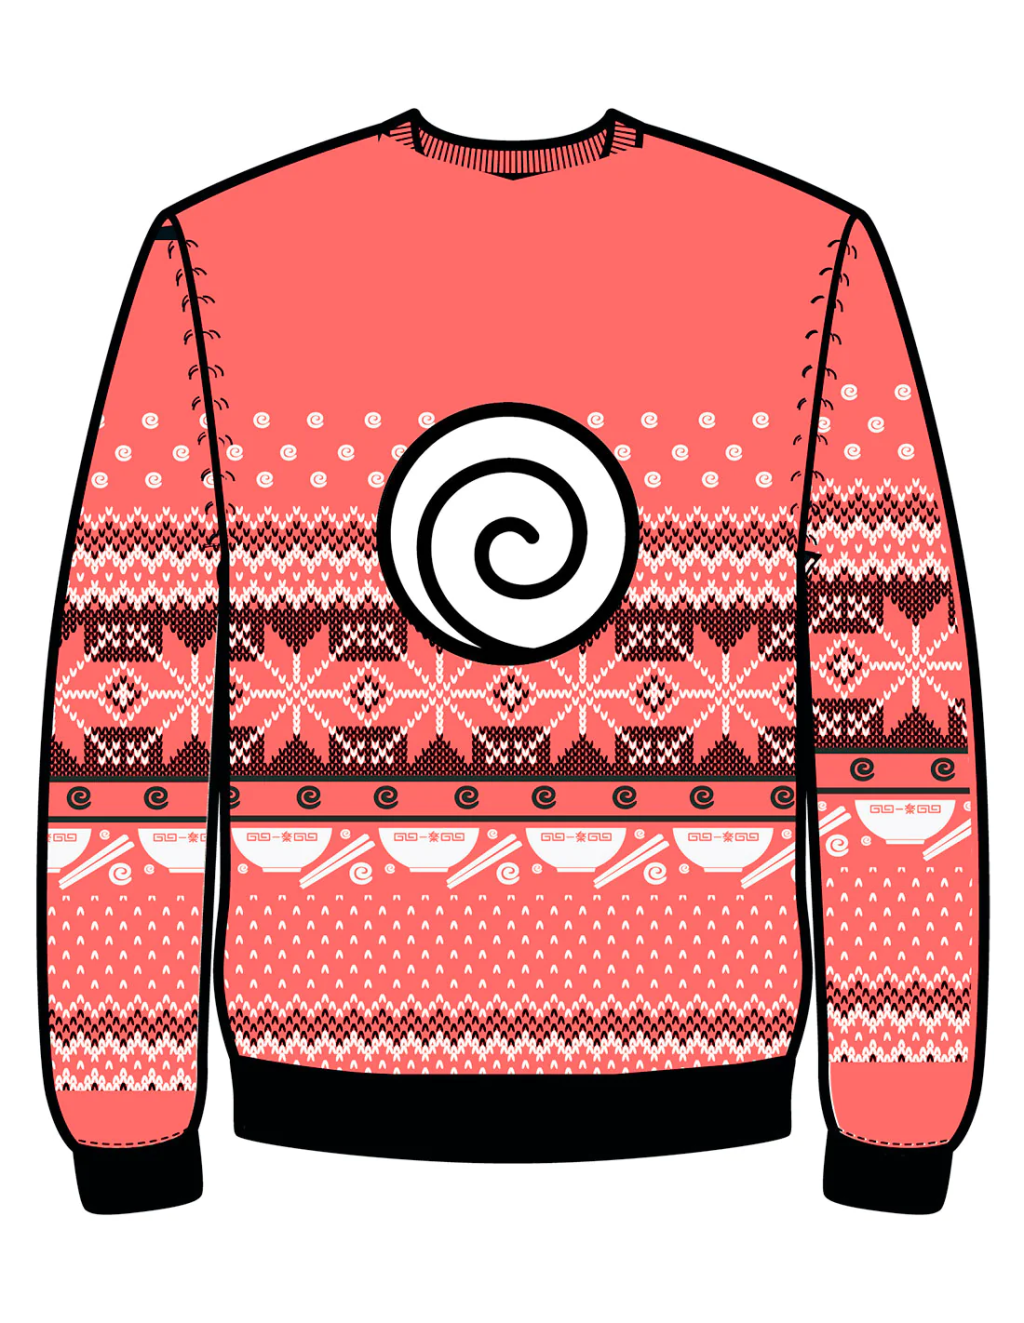 NARUTO - Ramen Ichiraku - Men Christmas Sweaters (XL)